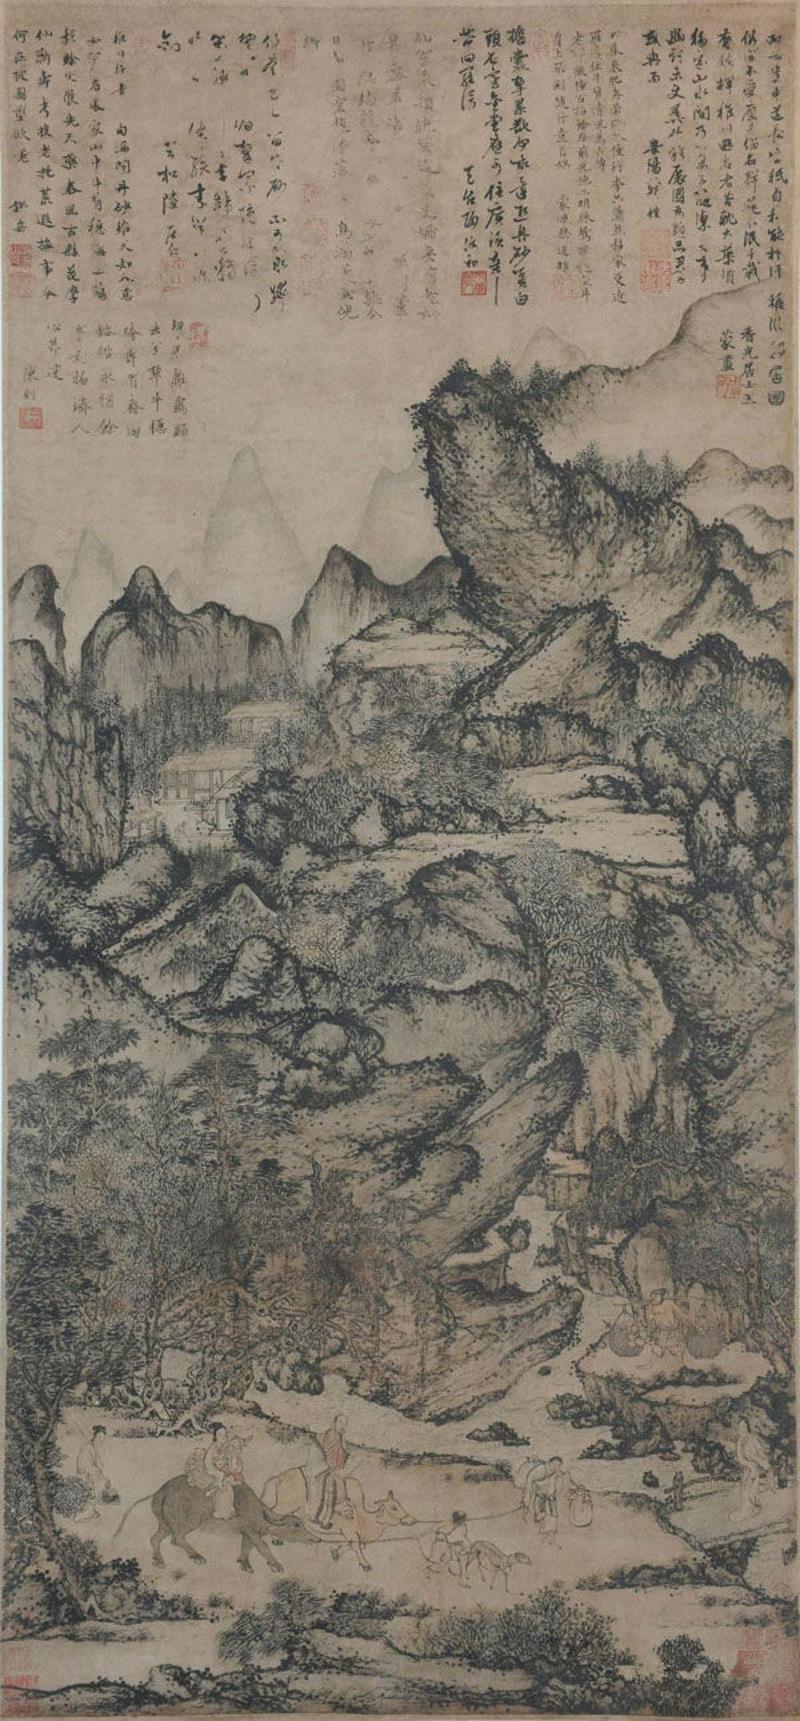 中国拍卖史上最贵古画缘起广东罗浮山!诗词热带火罗浮名画